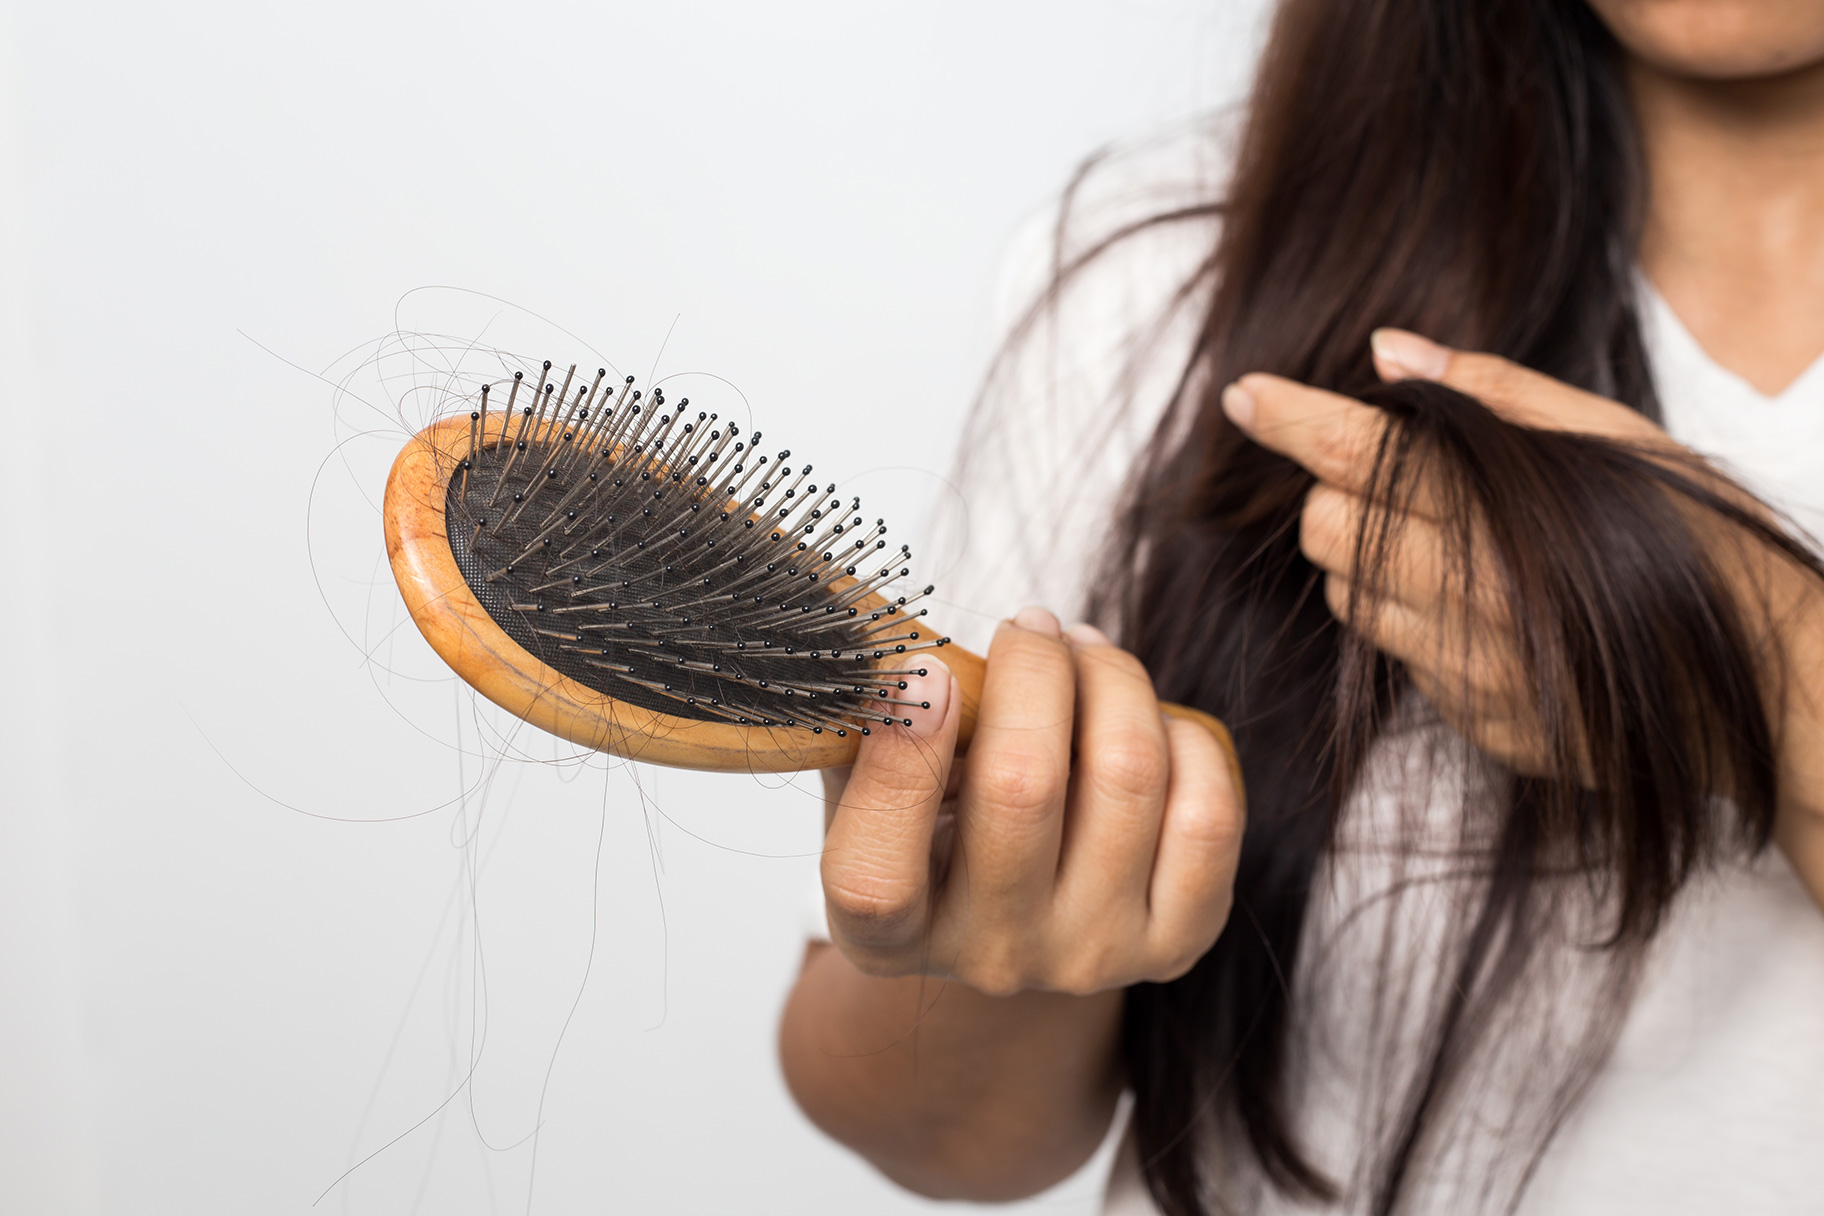 هل تعانين من تساقط الشعر؟ إليكي 5 طرق لإعادة نمو الشعر بشكل طبيعي خلال 3 أسابيع